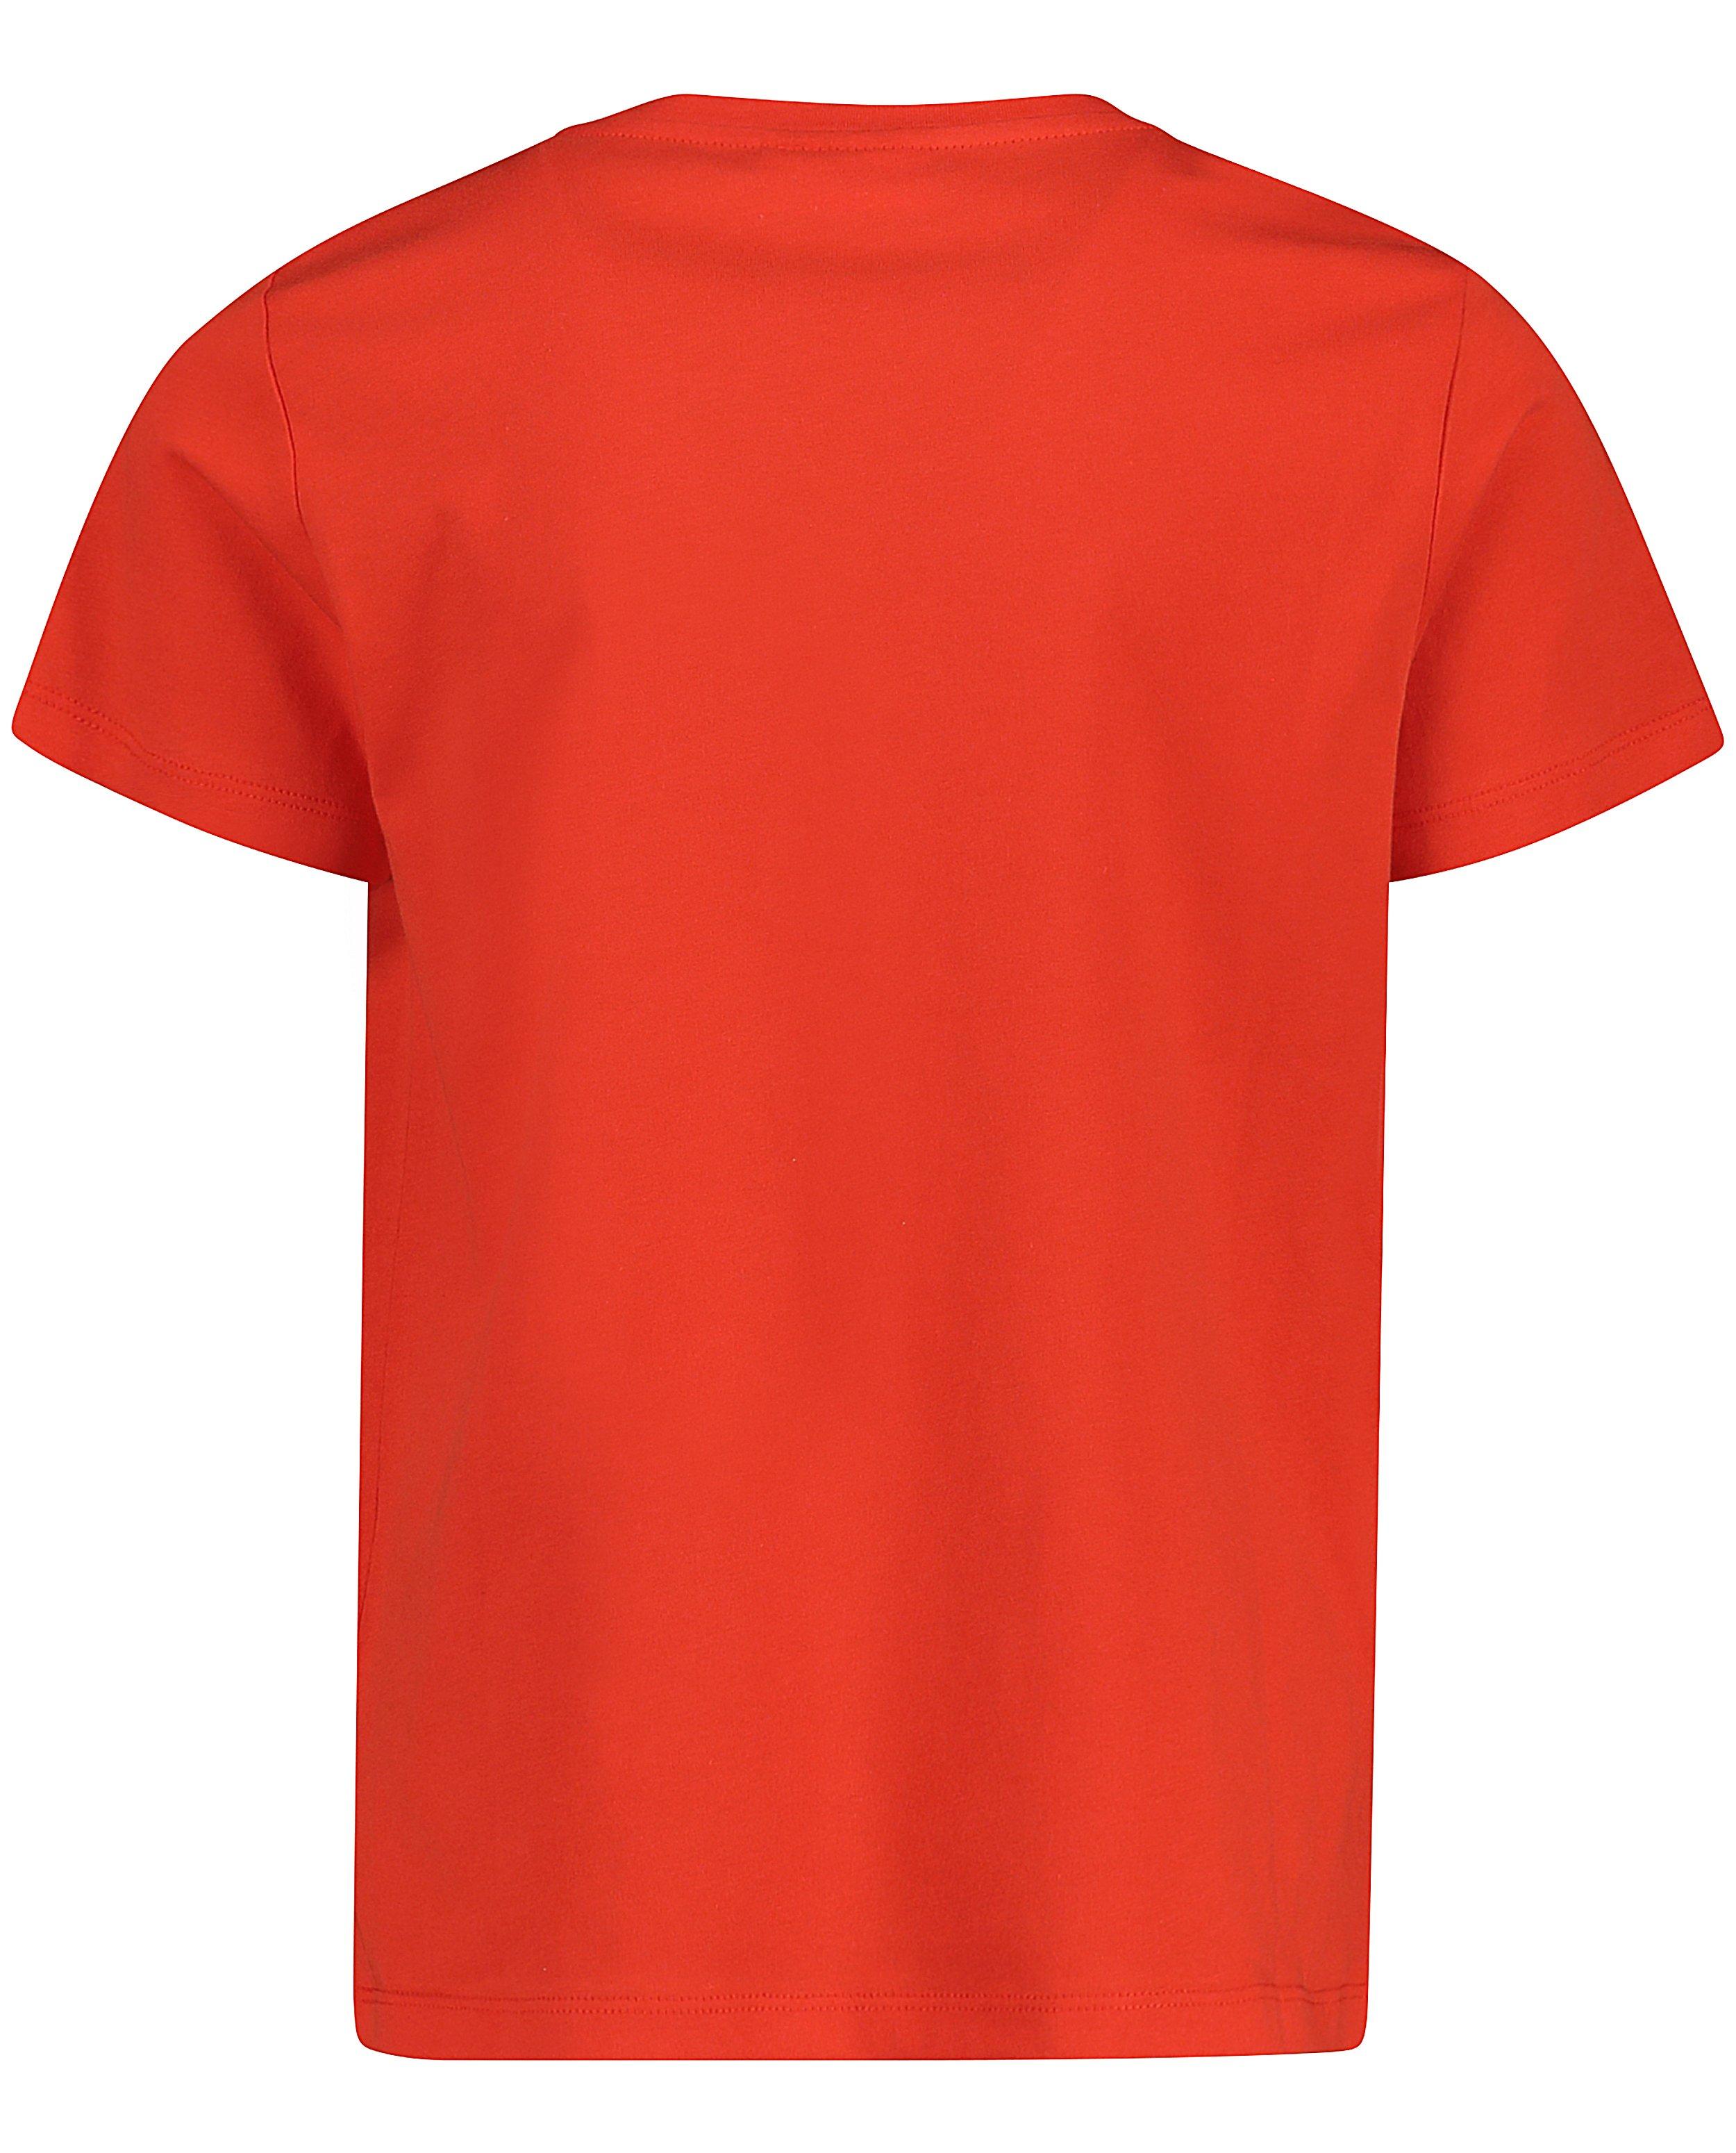 T-shirts - T-shirt rouge, inscription #LikeMe